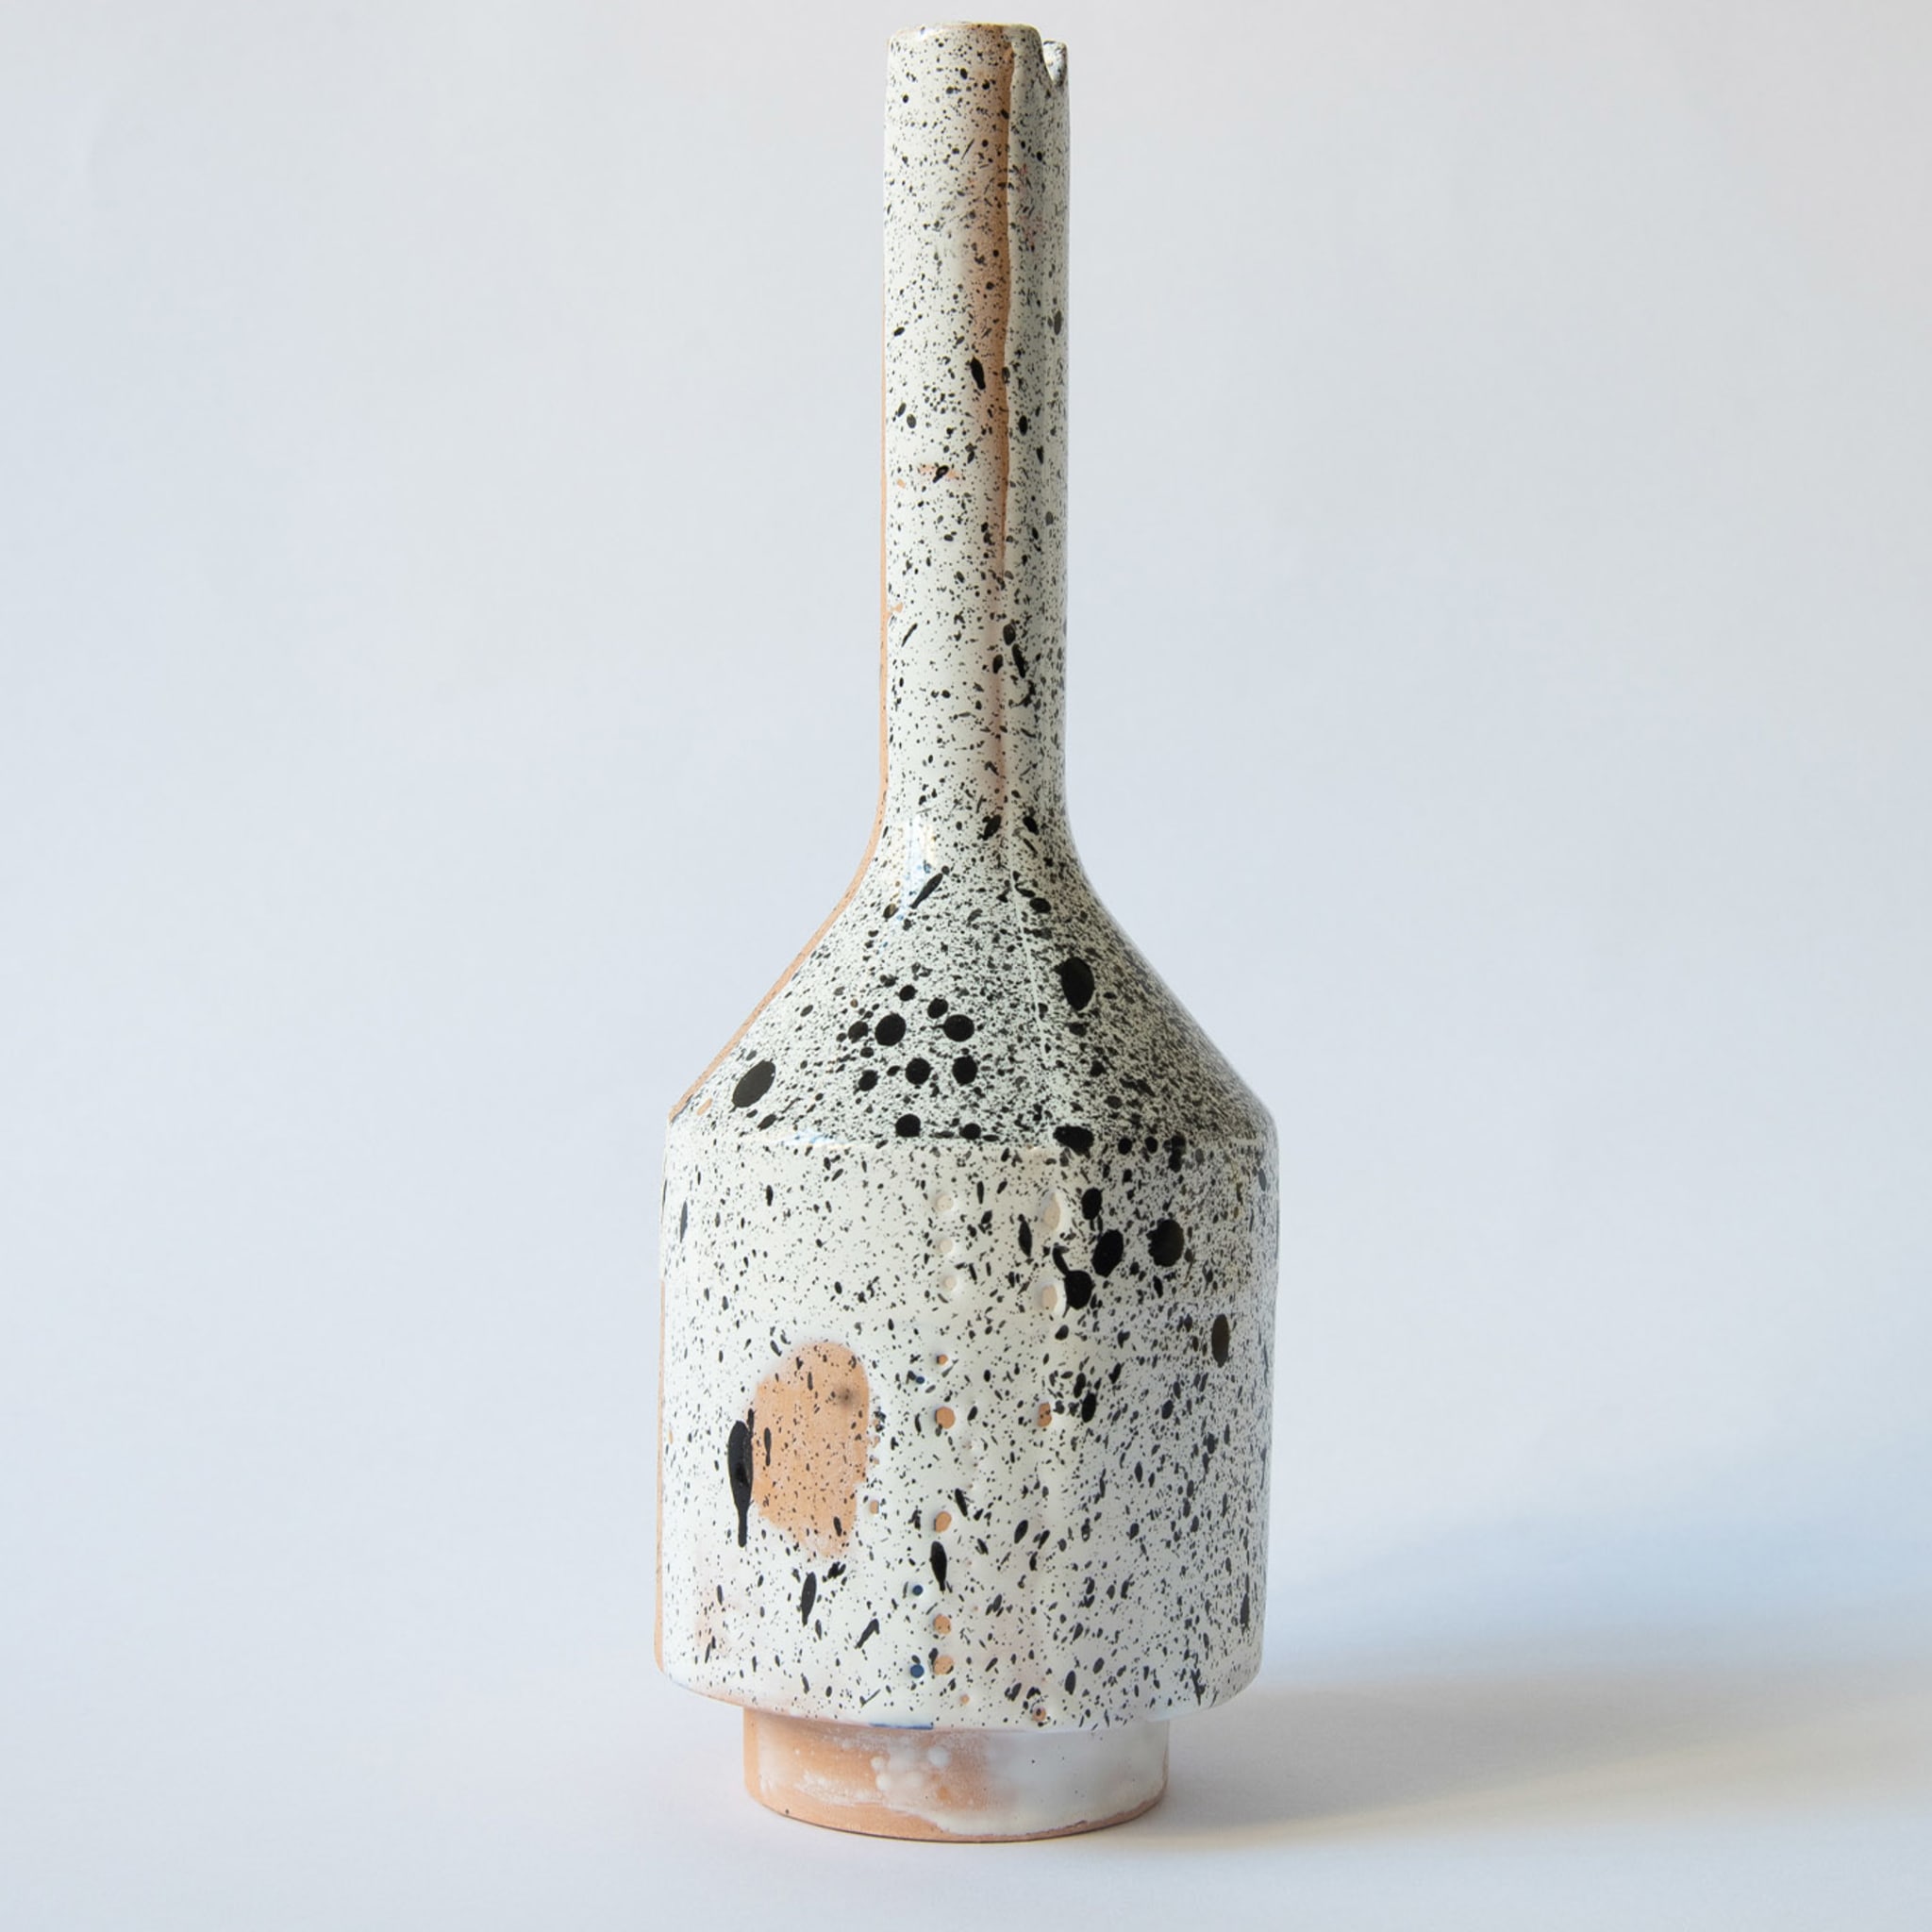 Mattone Terracotta&White Single-Stem Vase - Alternative view 1